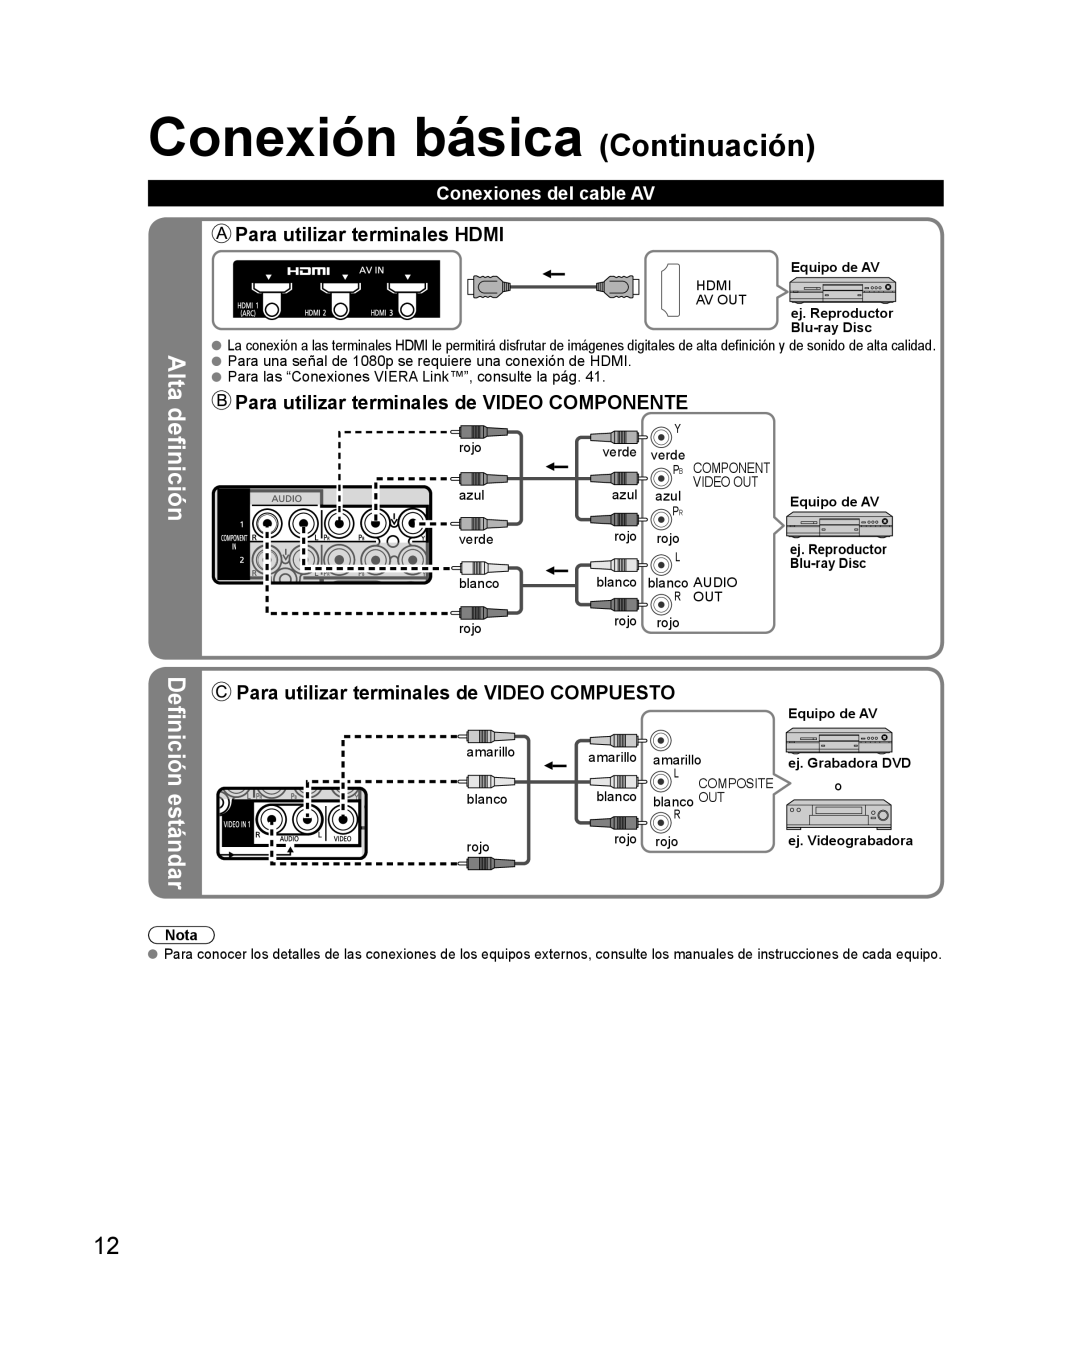 Panasonic TQB2AA0579 Conexión básica Continuación, Alta definición, Definición estándar, Para utilizar terminales HDMI 